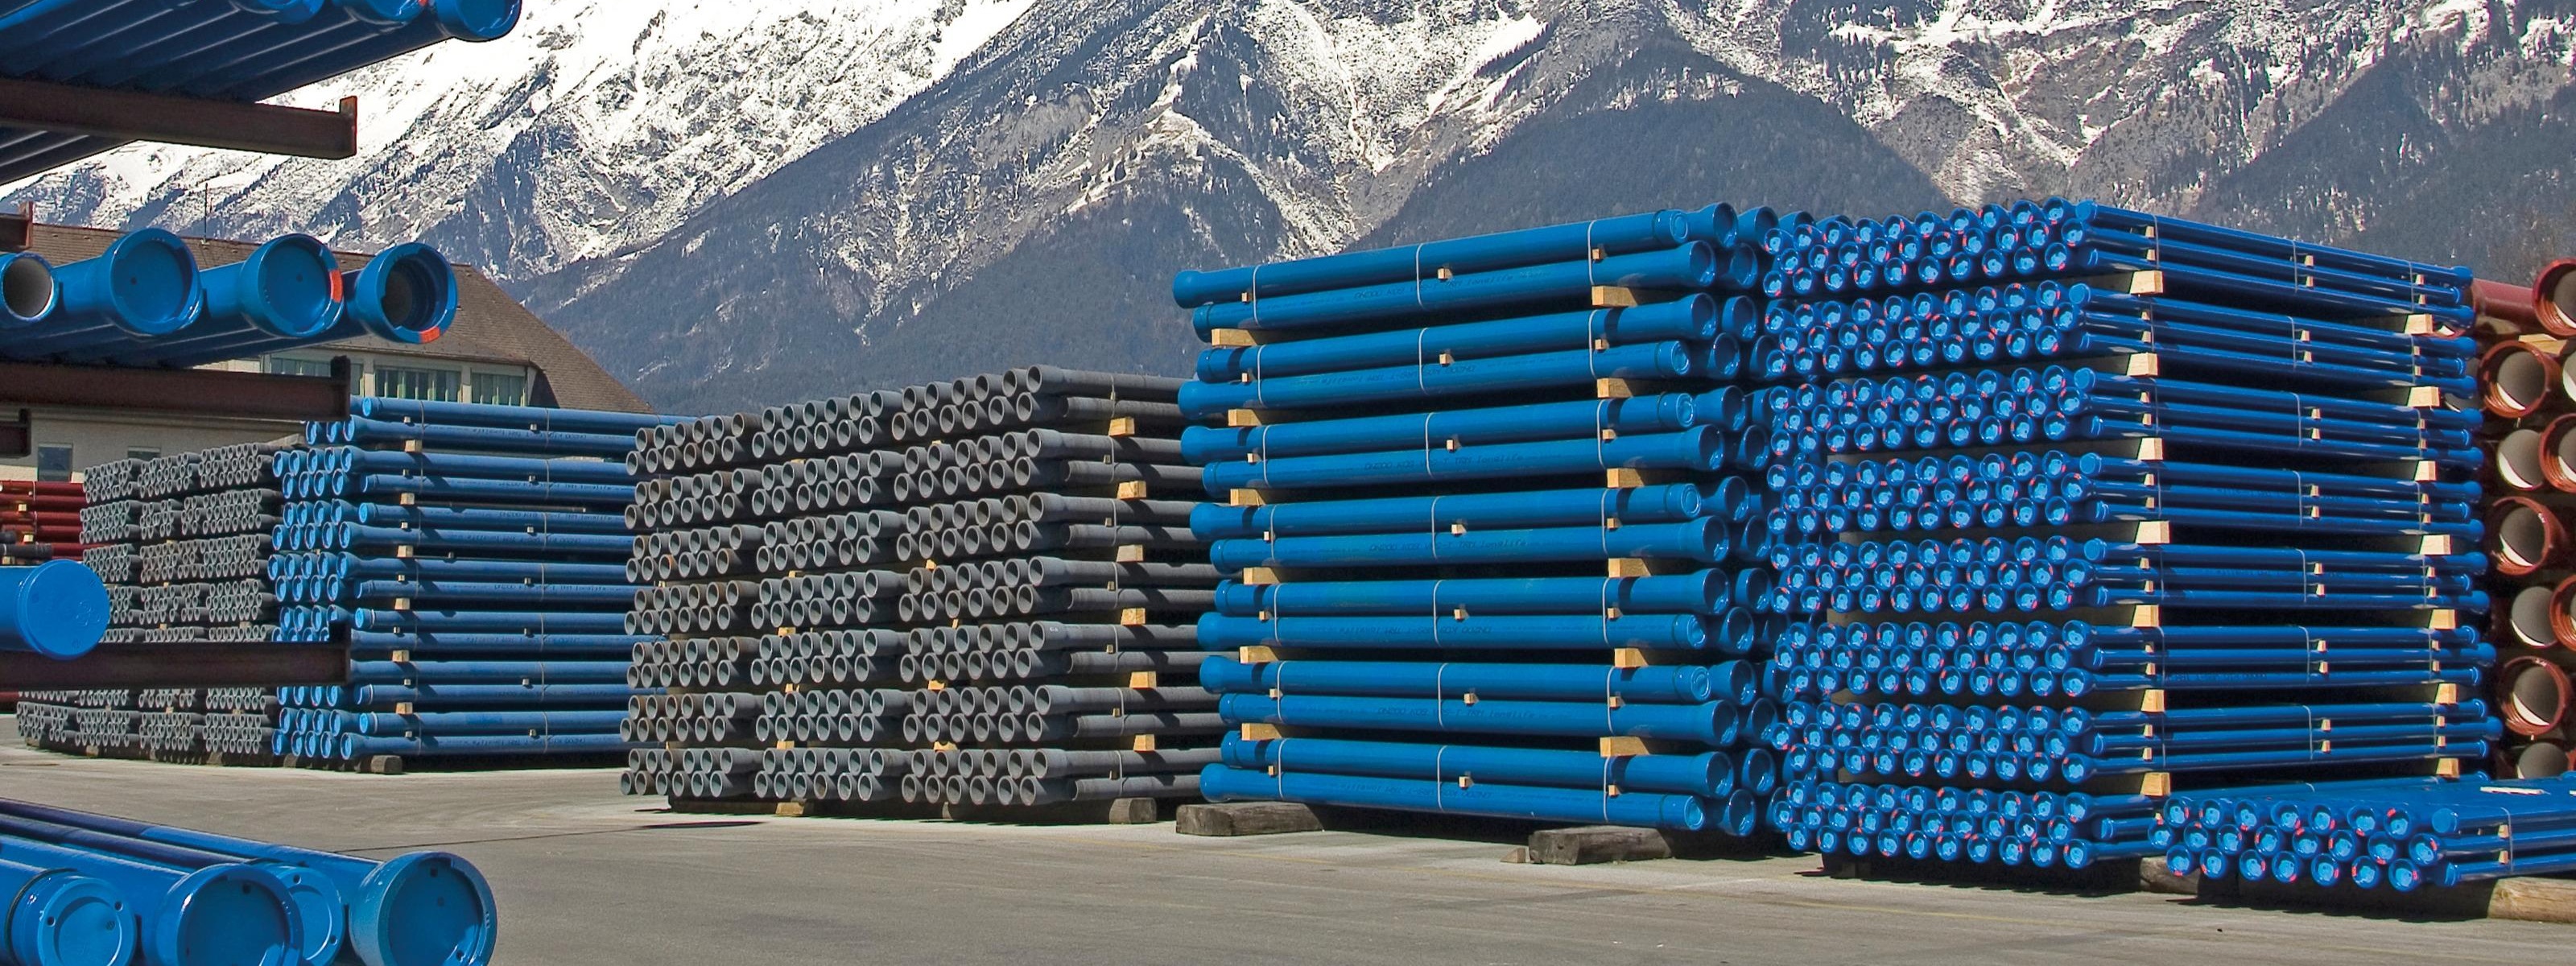 Lagerplatz mit gestapelten blauen Rohren, im Hintergrund beschneite Bergkette und blauer Himmel